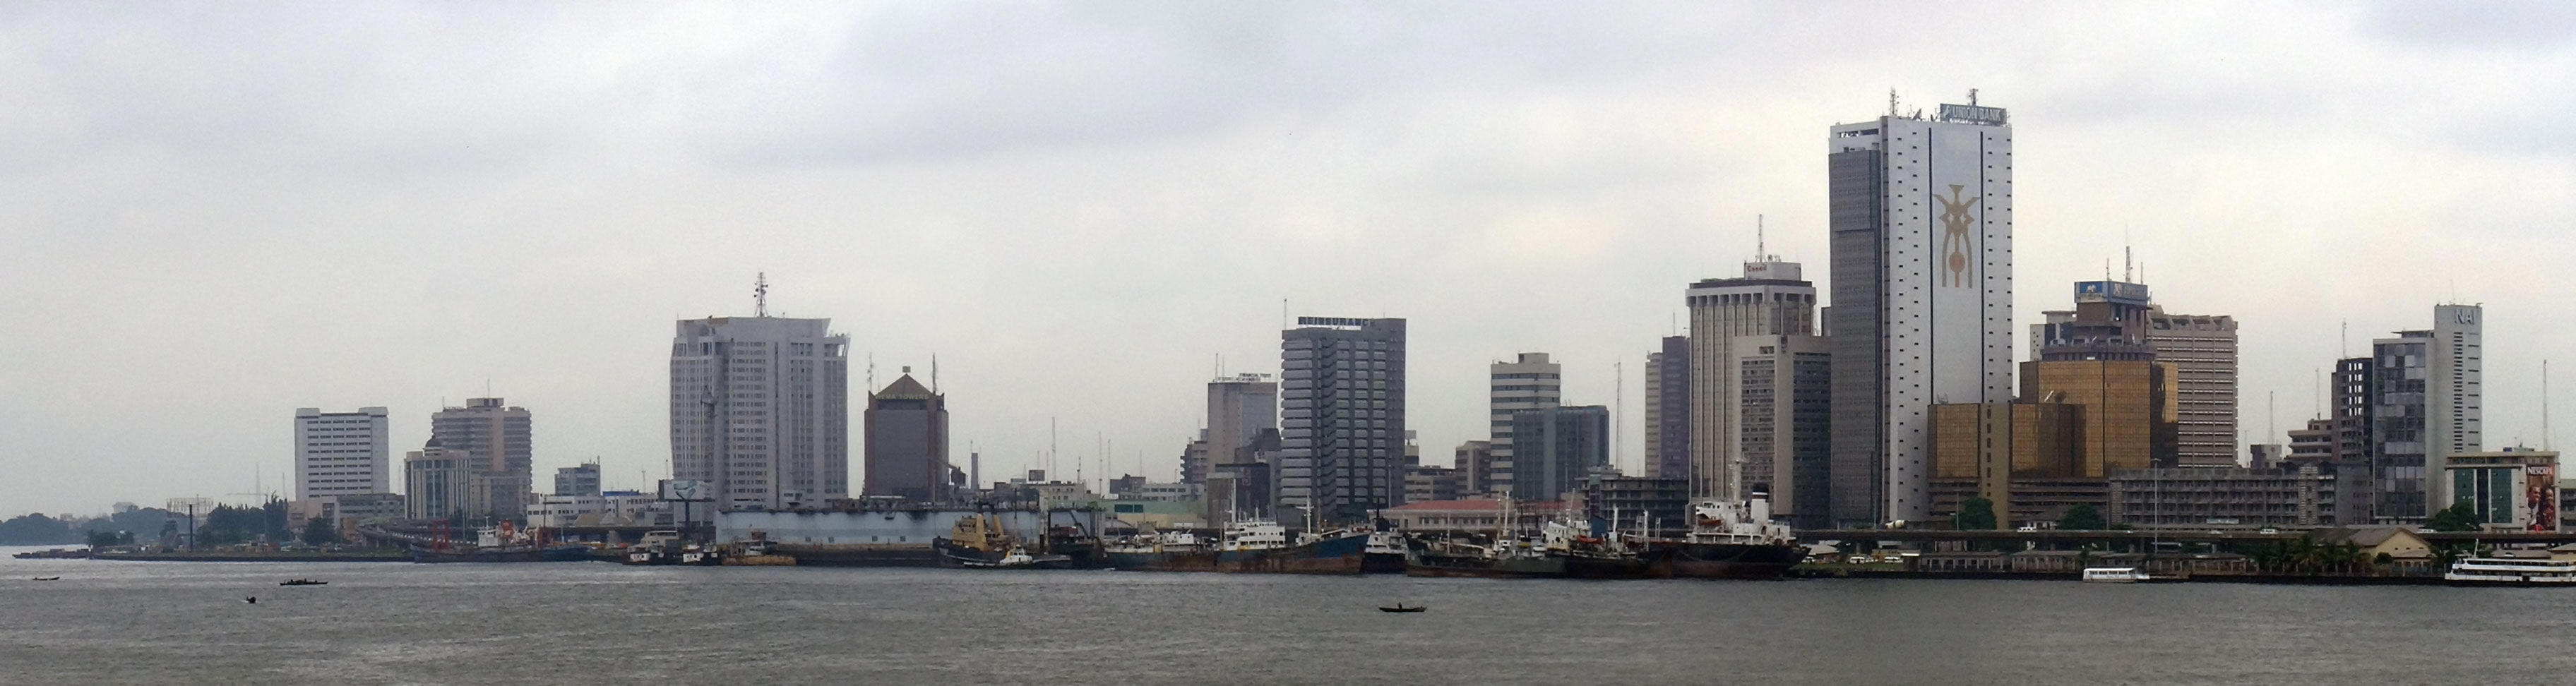 know your city development: Lagos skyline (nigeria)